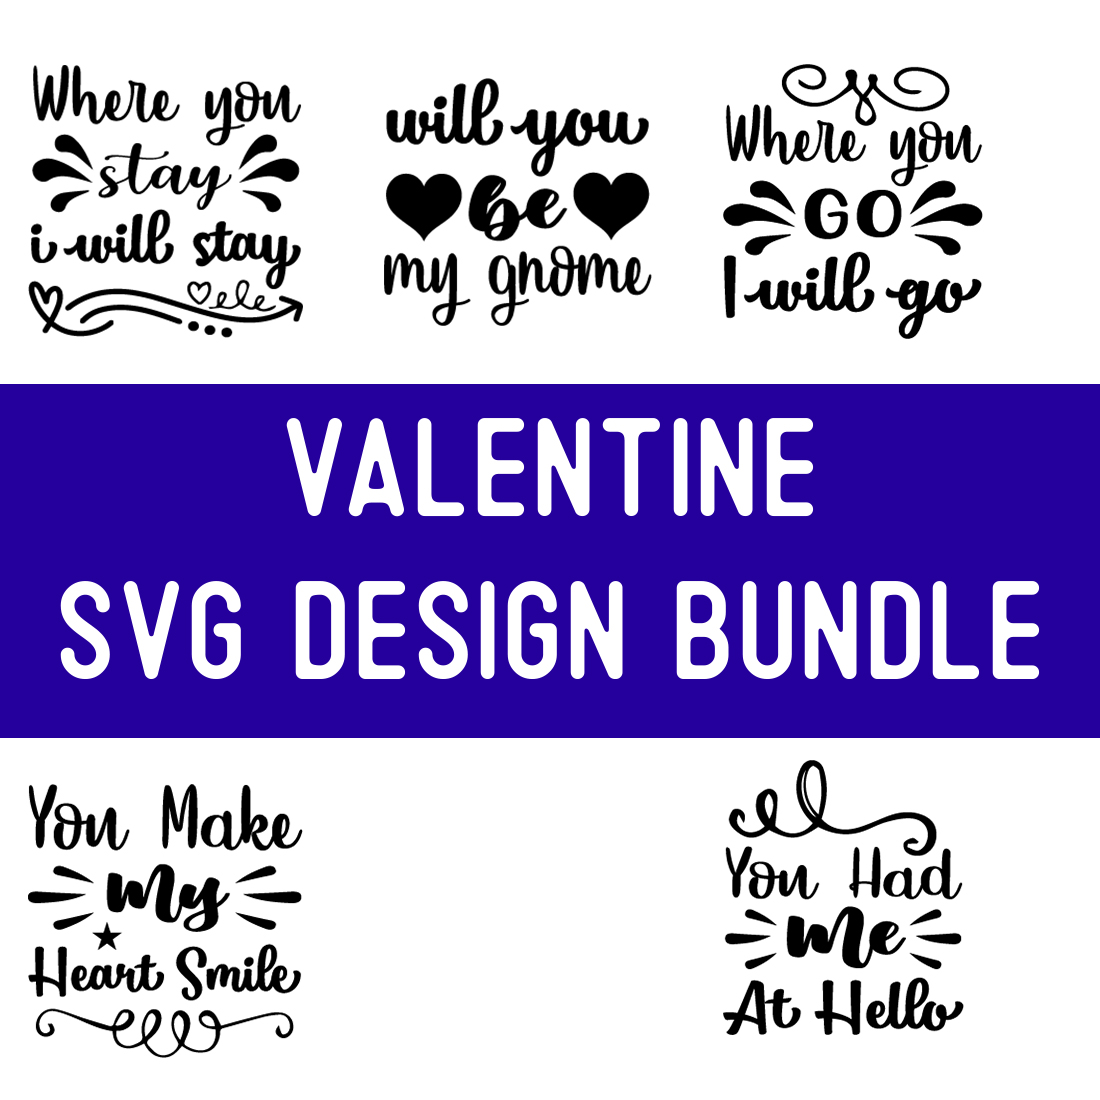 Valentine SVG Design Bundle preview image.